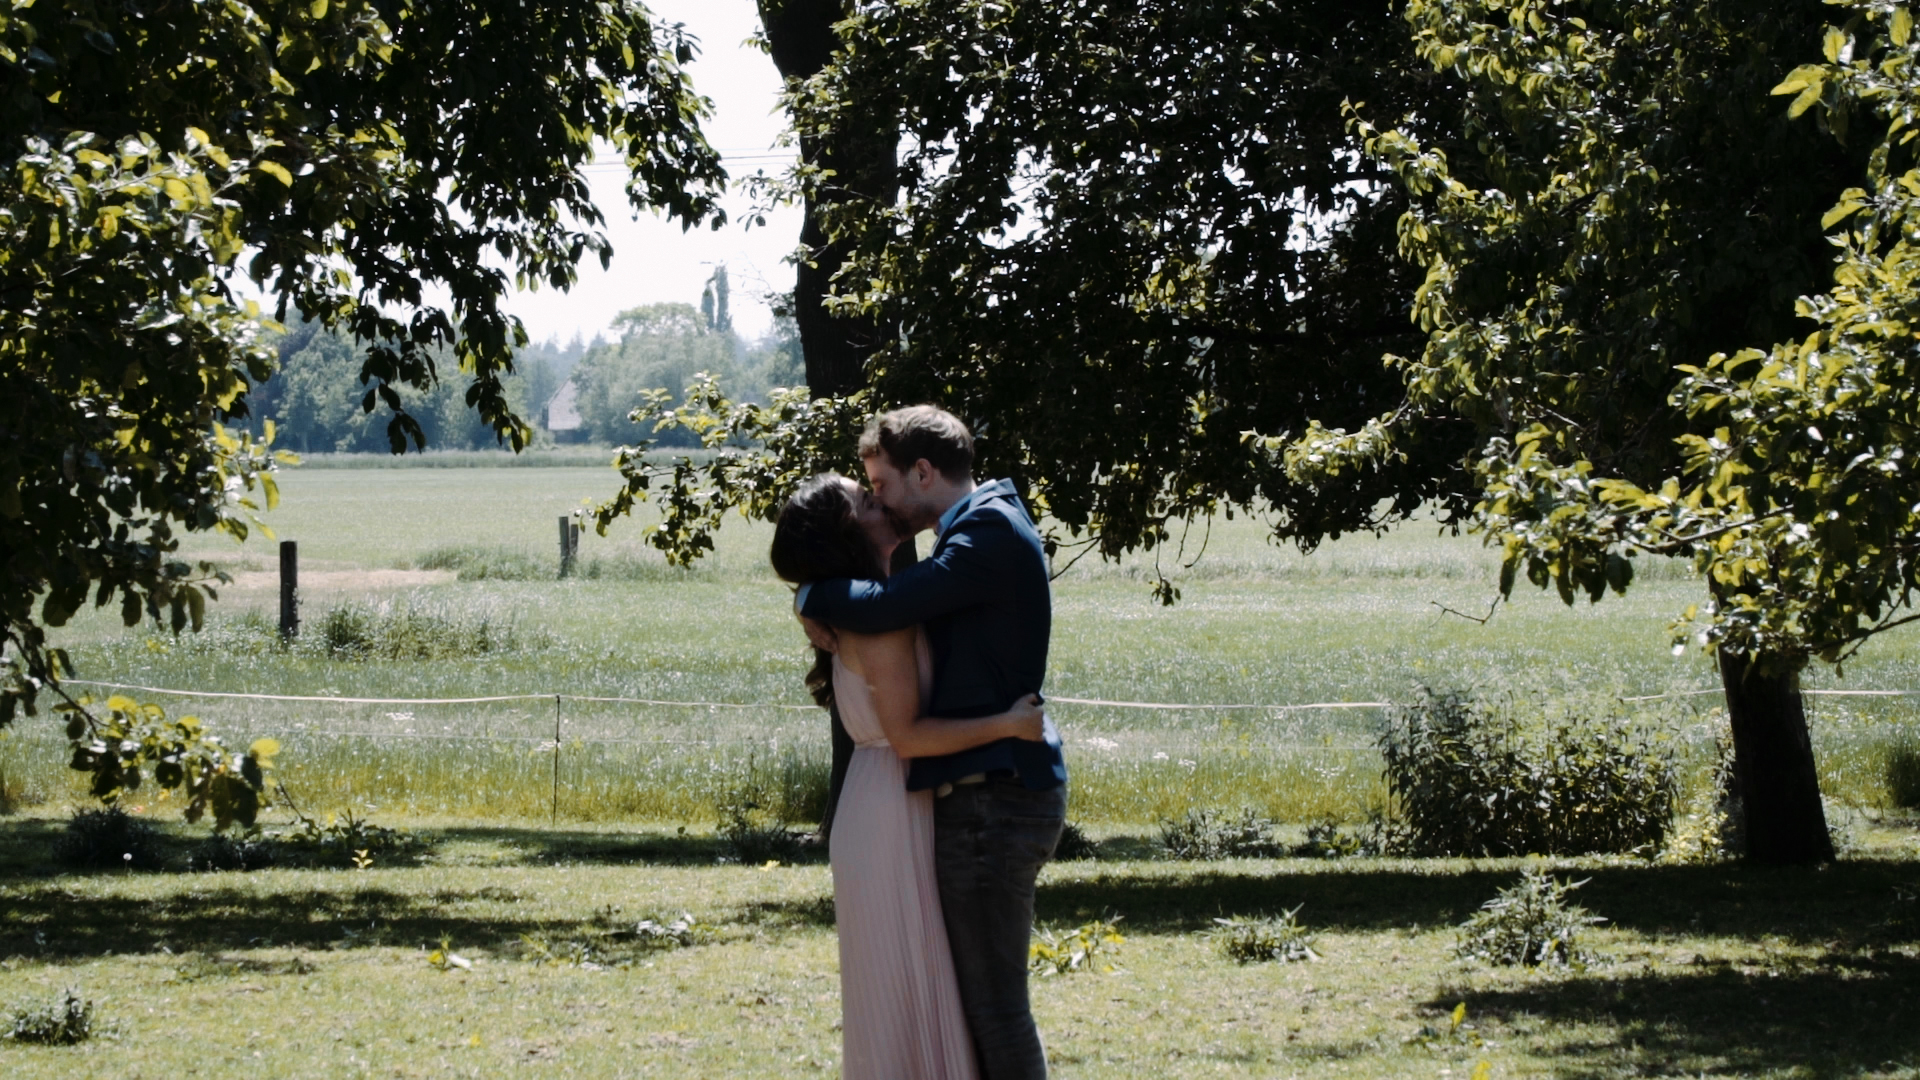 Loveshoot video voor je bruiloft door videograaf Jahra uit Apeldoorn